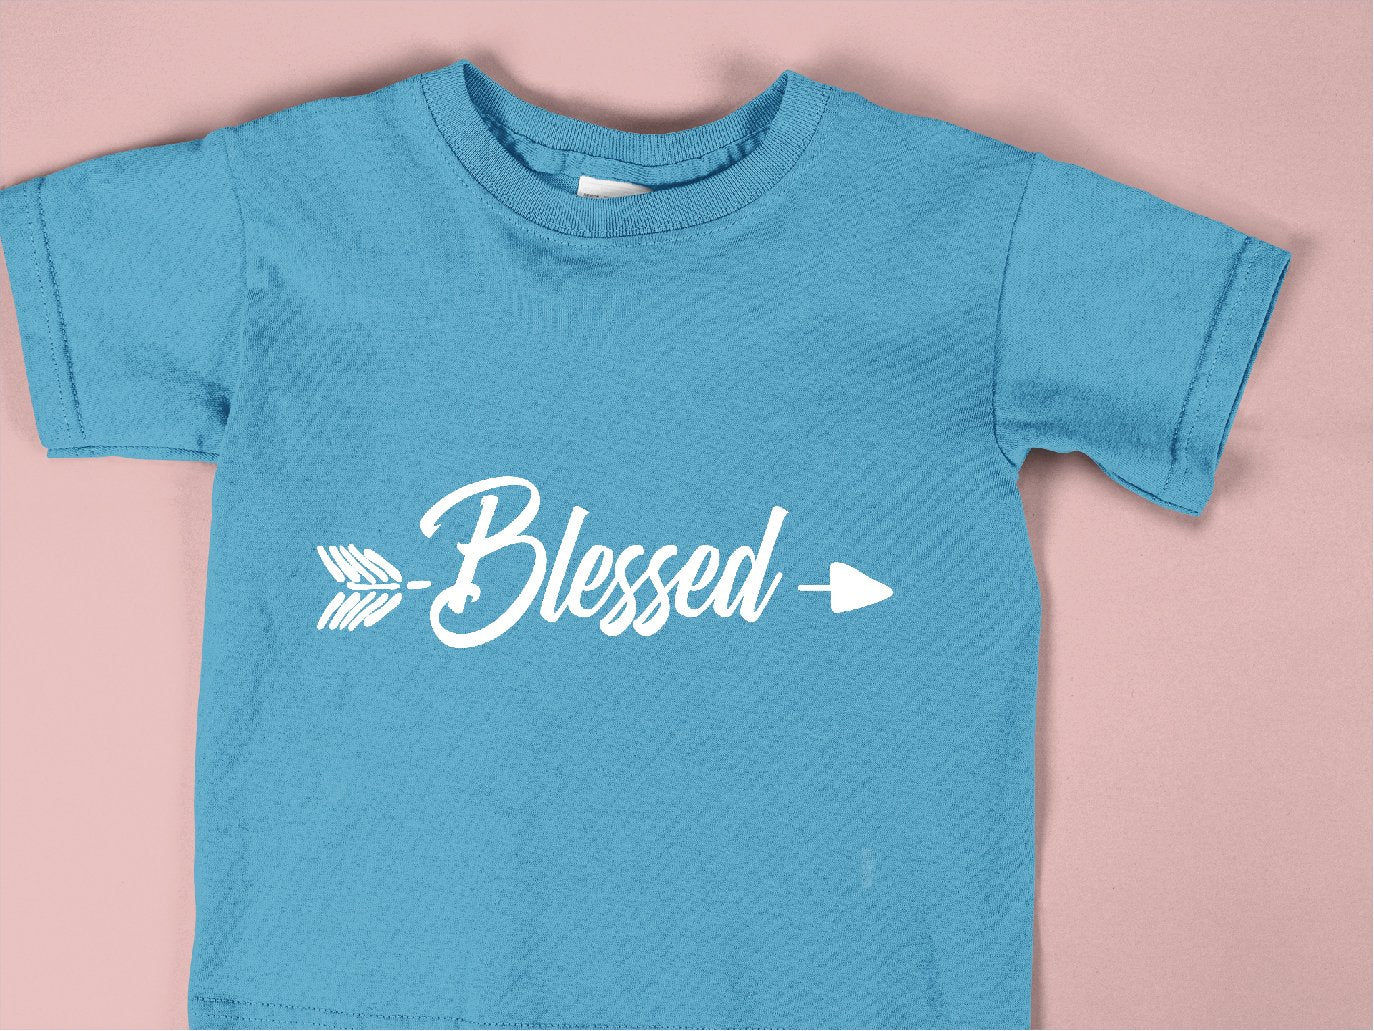 Blessed - CHR - 015